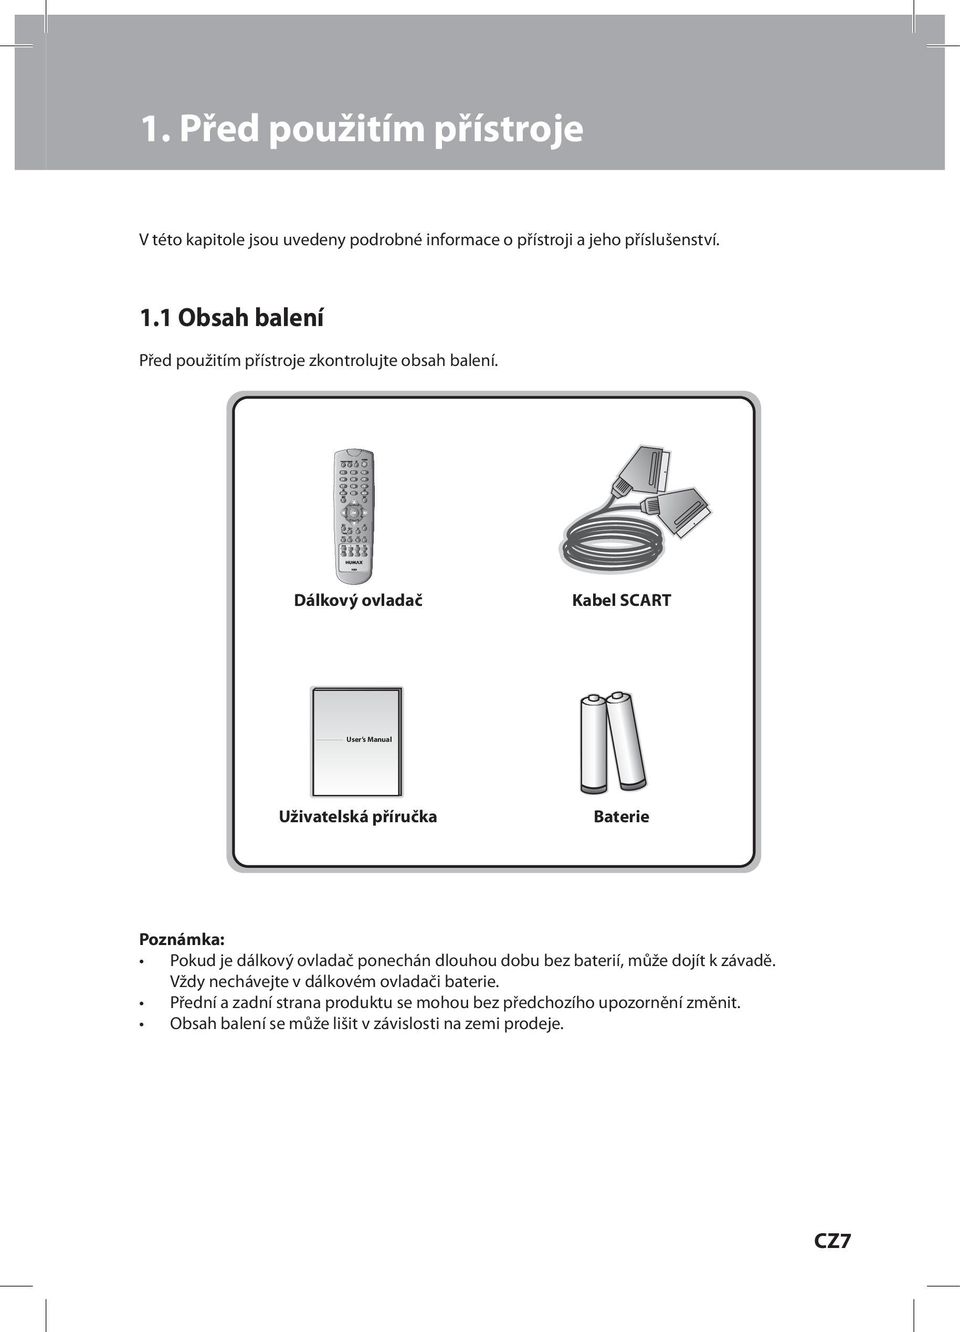 Dálkový ovladač Kabel SCART User s Manual Uživatelská příručka Baterie Poznámka: Pokud je dálkový ovladač ponechán dlouhou dobu